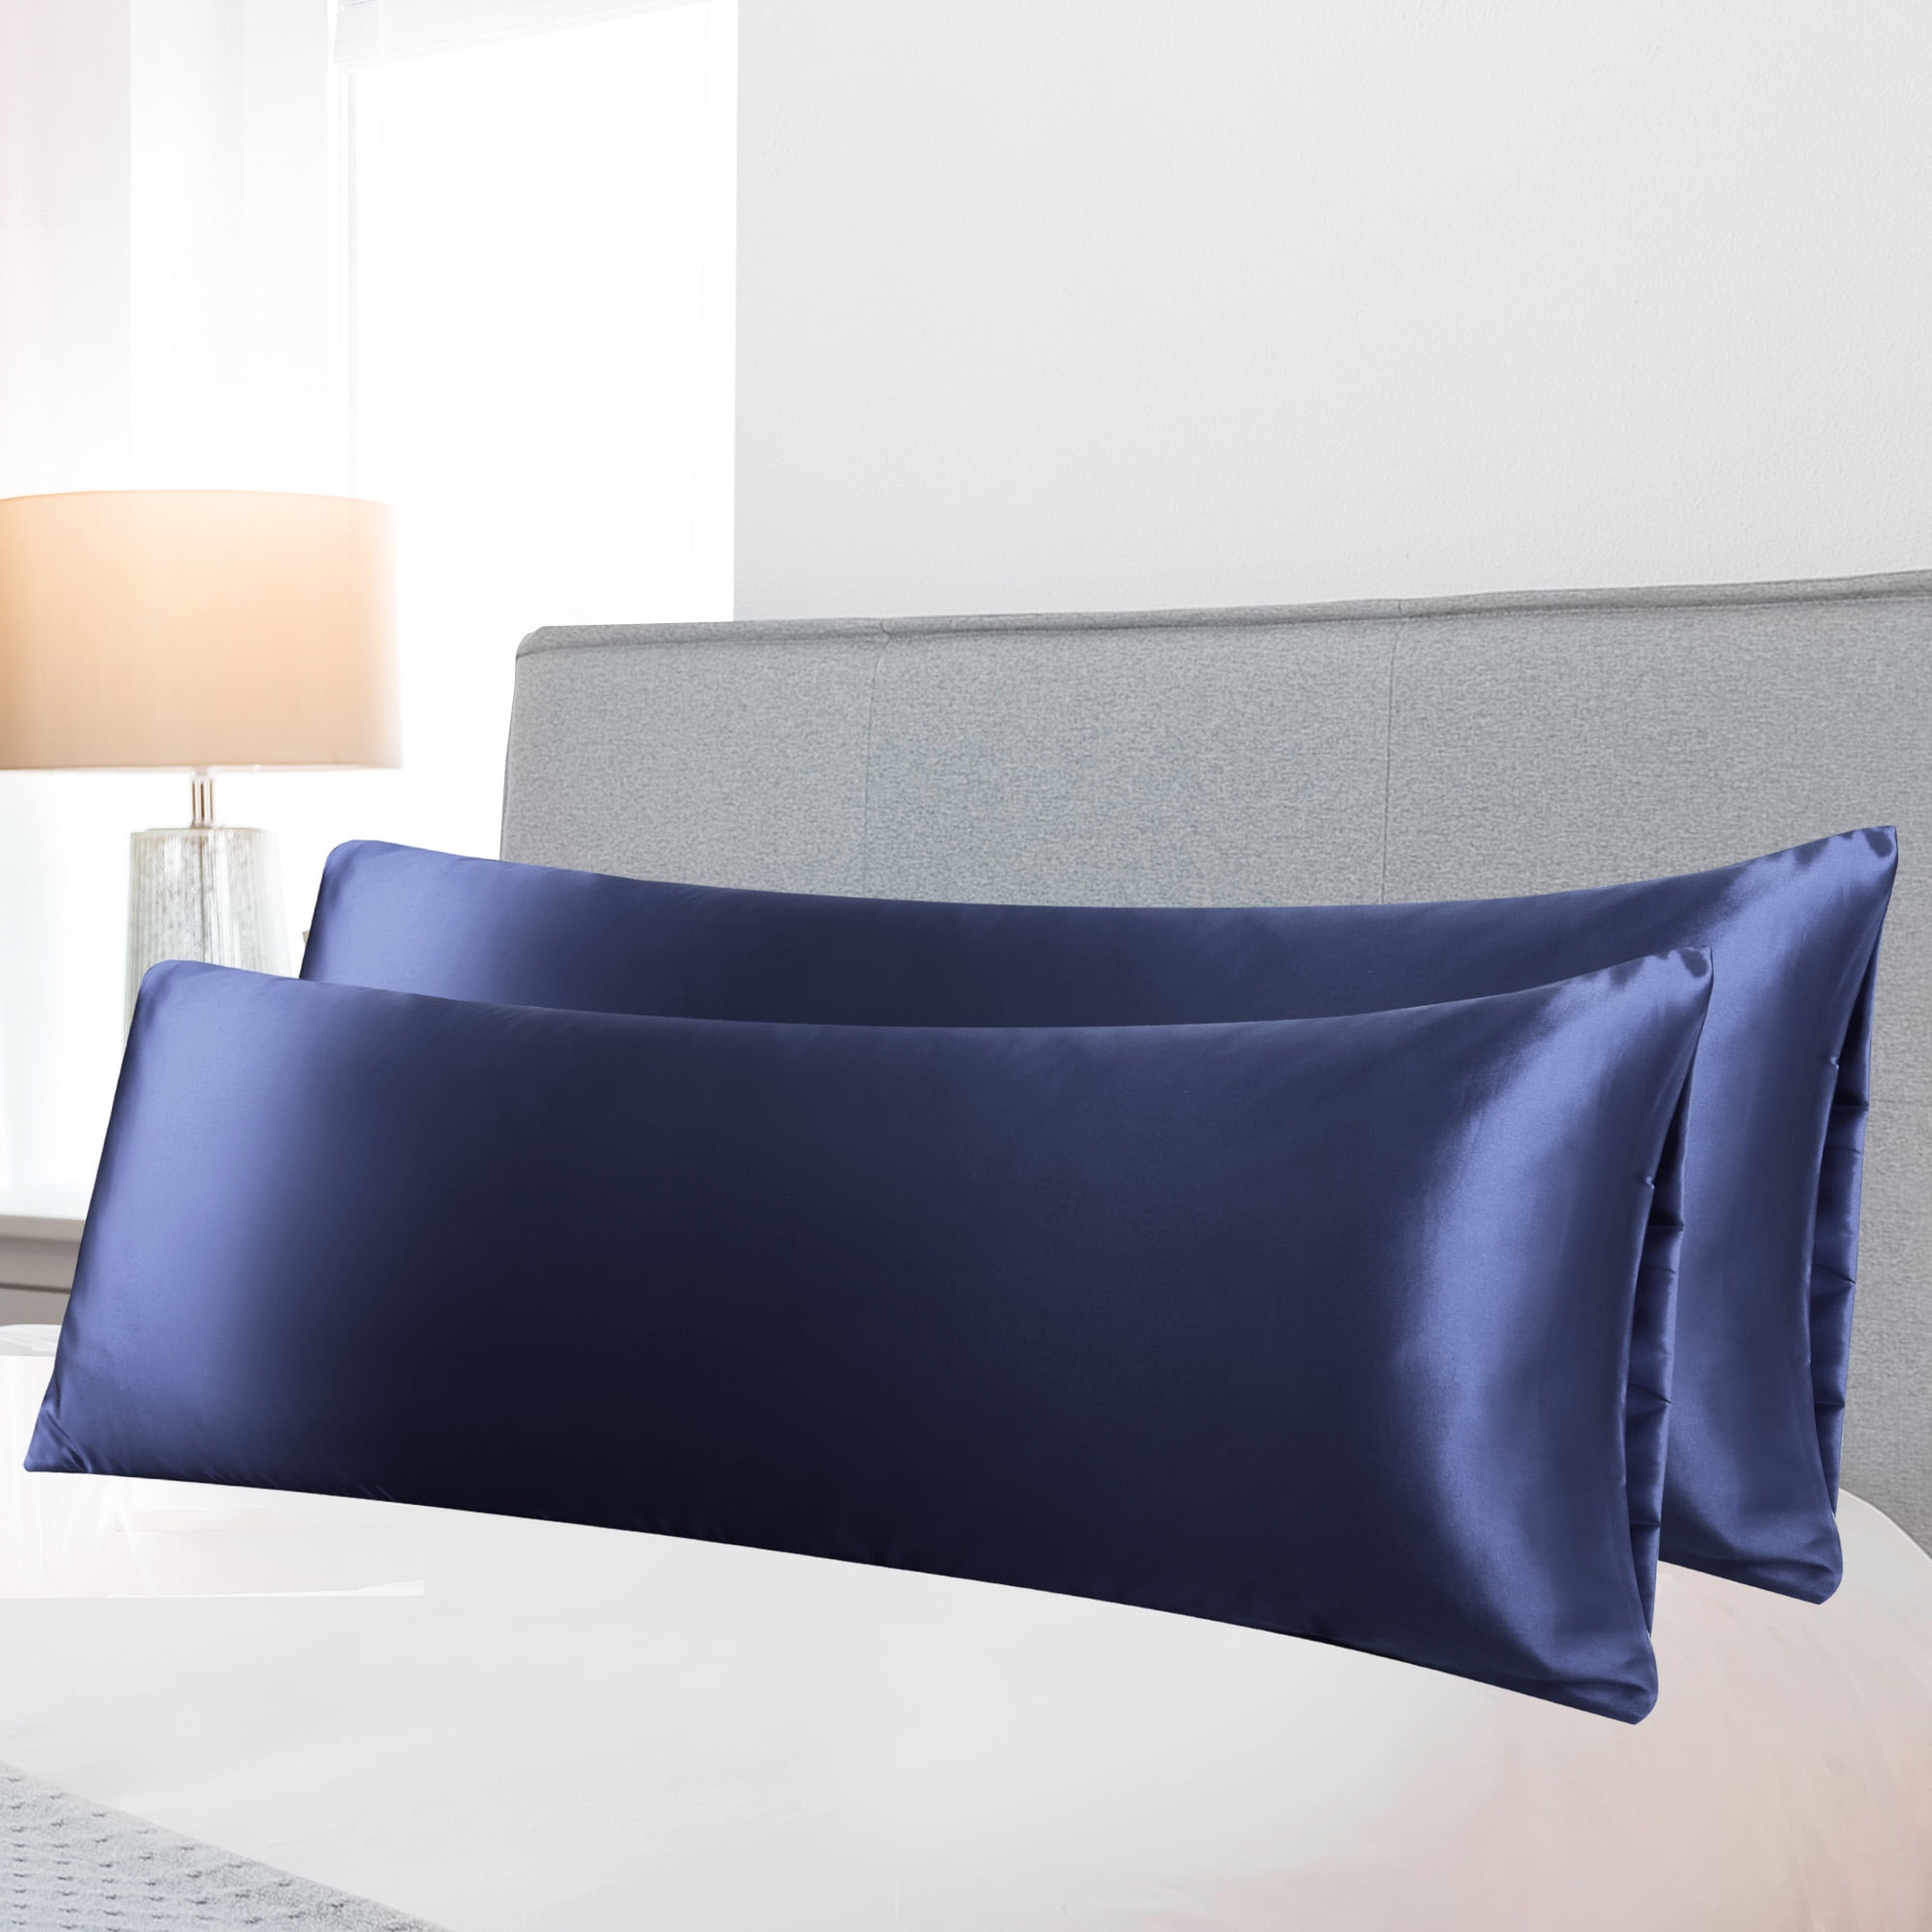 2pc Standard Queen King Satin Silky Pillow Shams Pillow Case Cover Home Bedding 